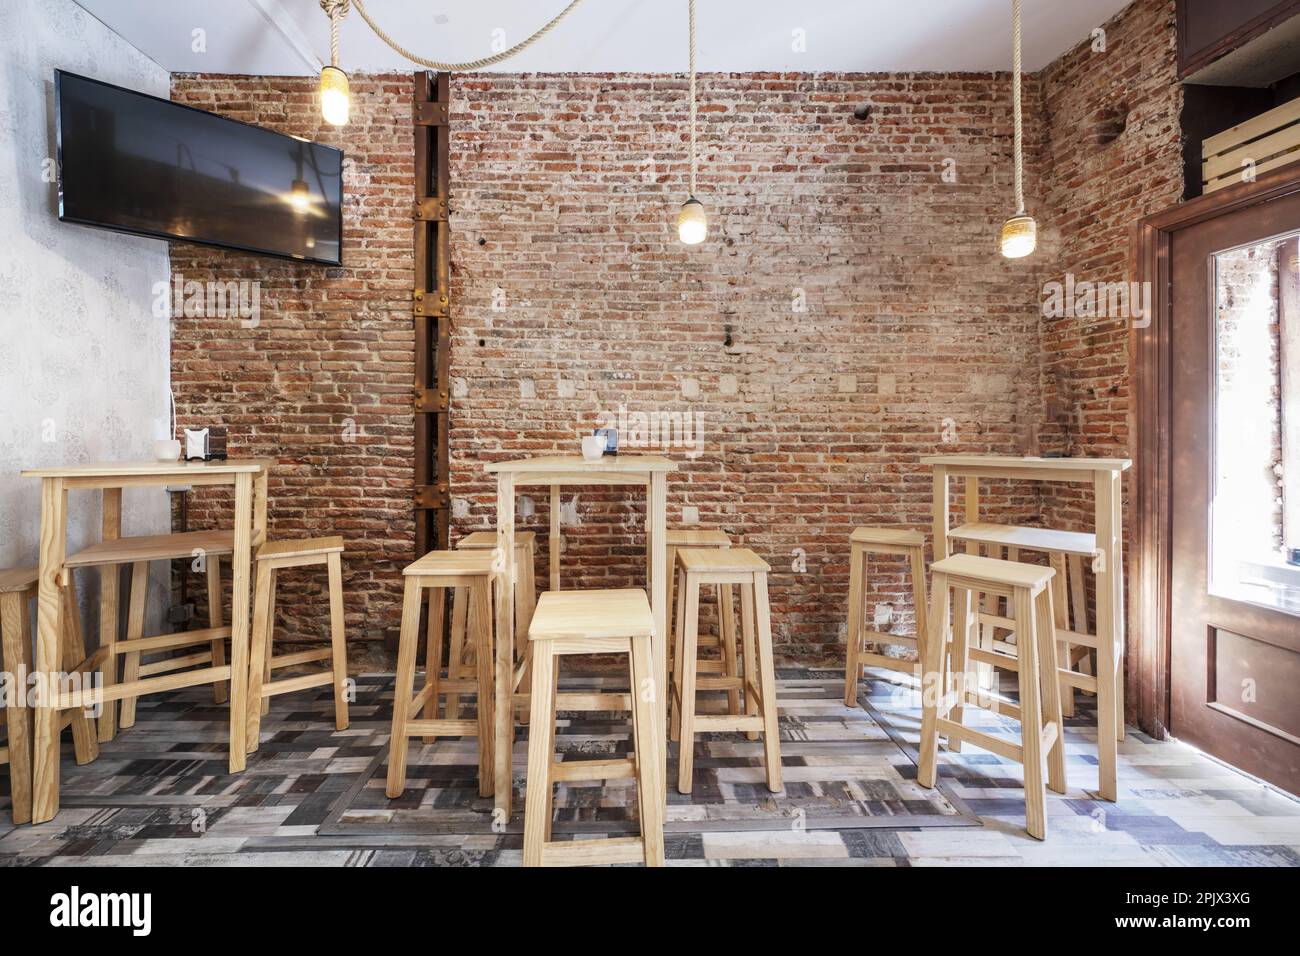 Un bar vide avec des murs en briques brutes et de grandes tables en bois blanc avec des tabourets assortis, un sol en mosaïque de bois et une télévision Banque D'Images